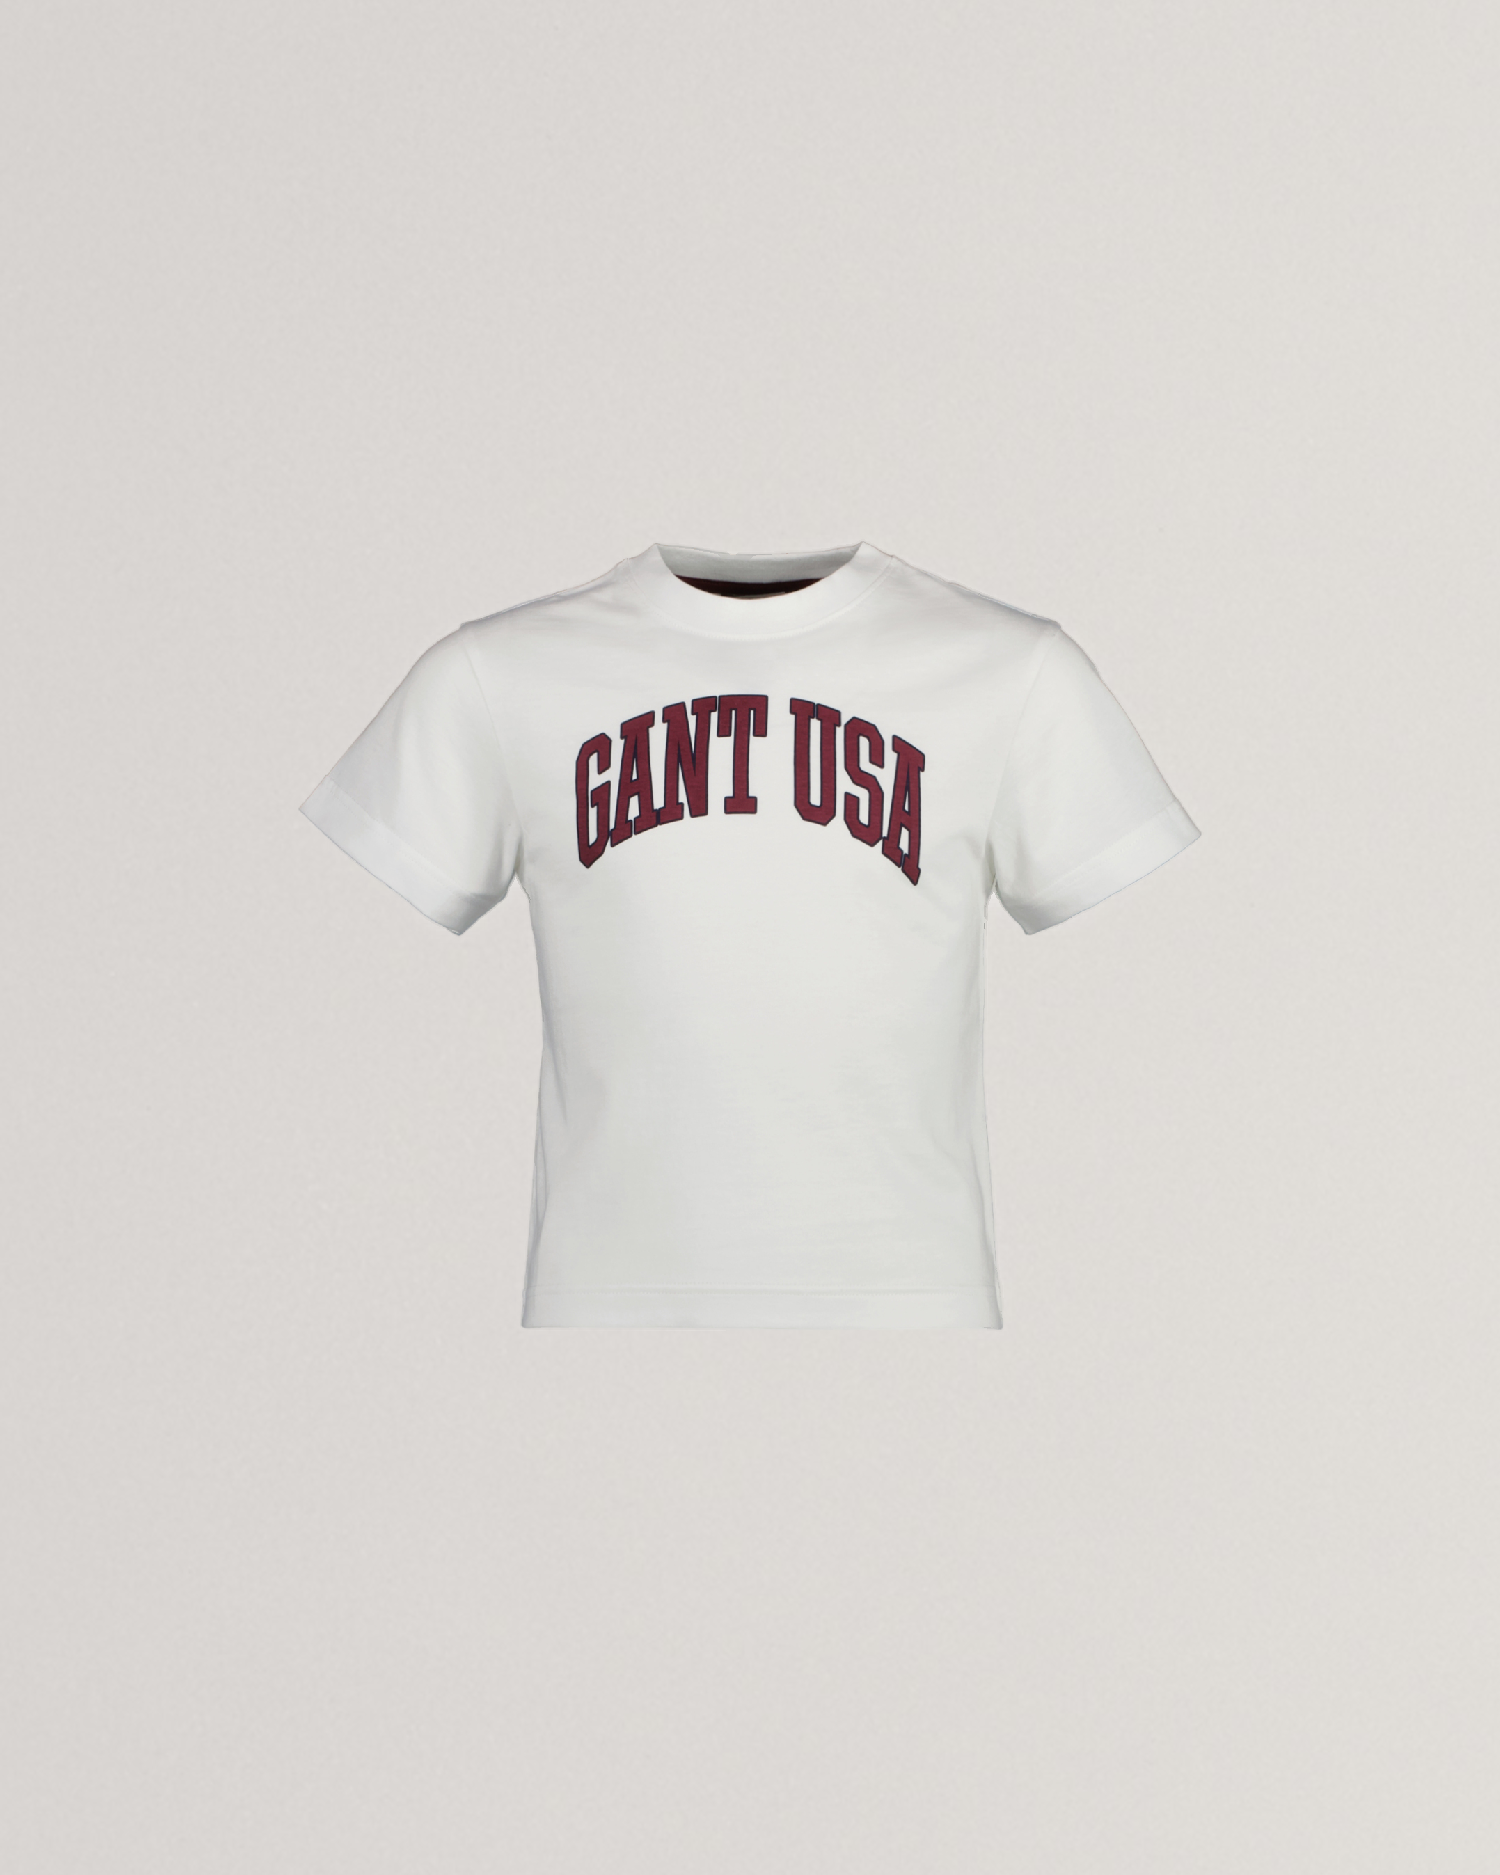 Τ-shirt Παιδικό GANT USA (Outlet)